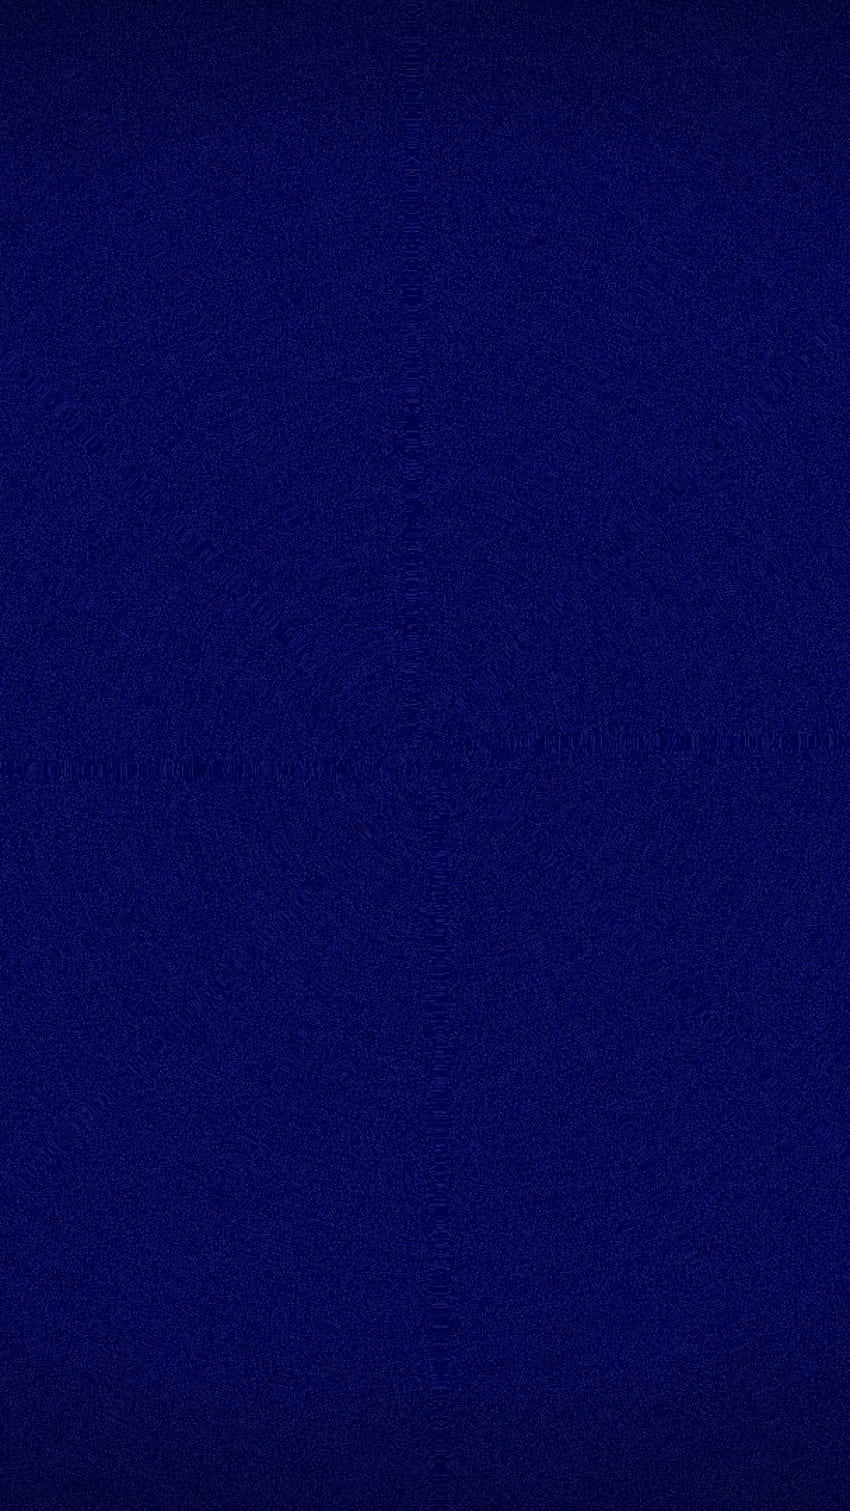 iPhone azul marino sólido, azul marino liso fondo de pantalla del teléfono